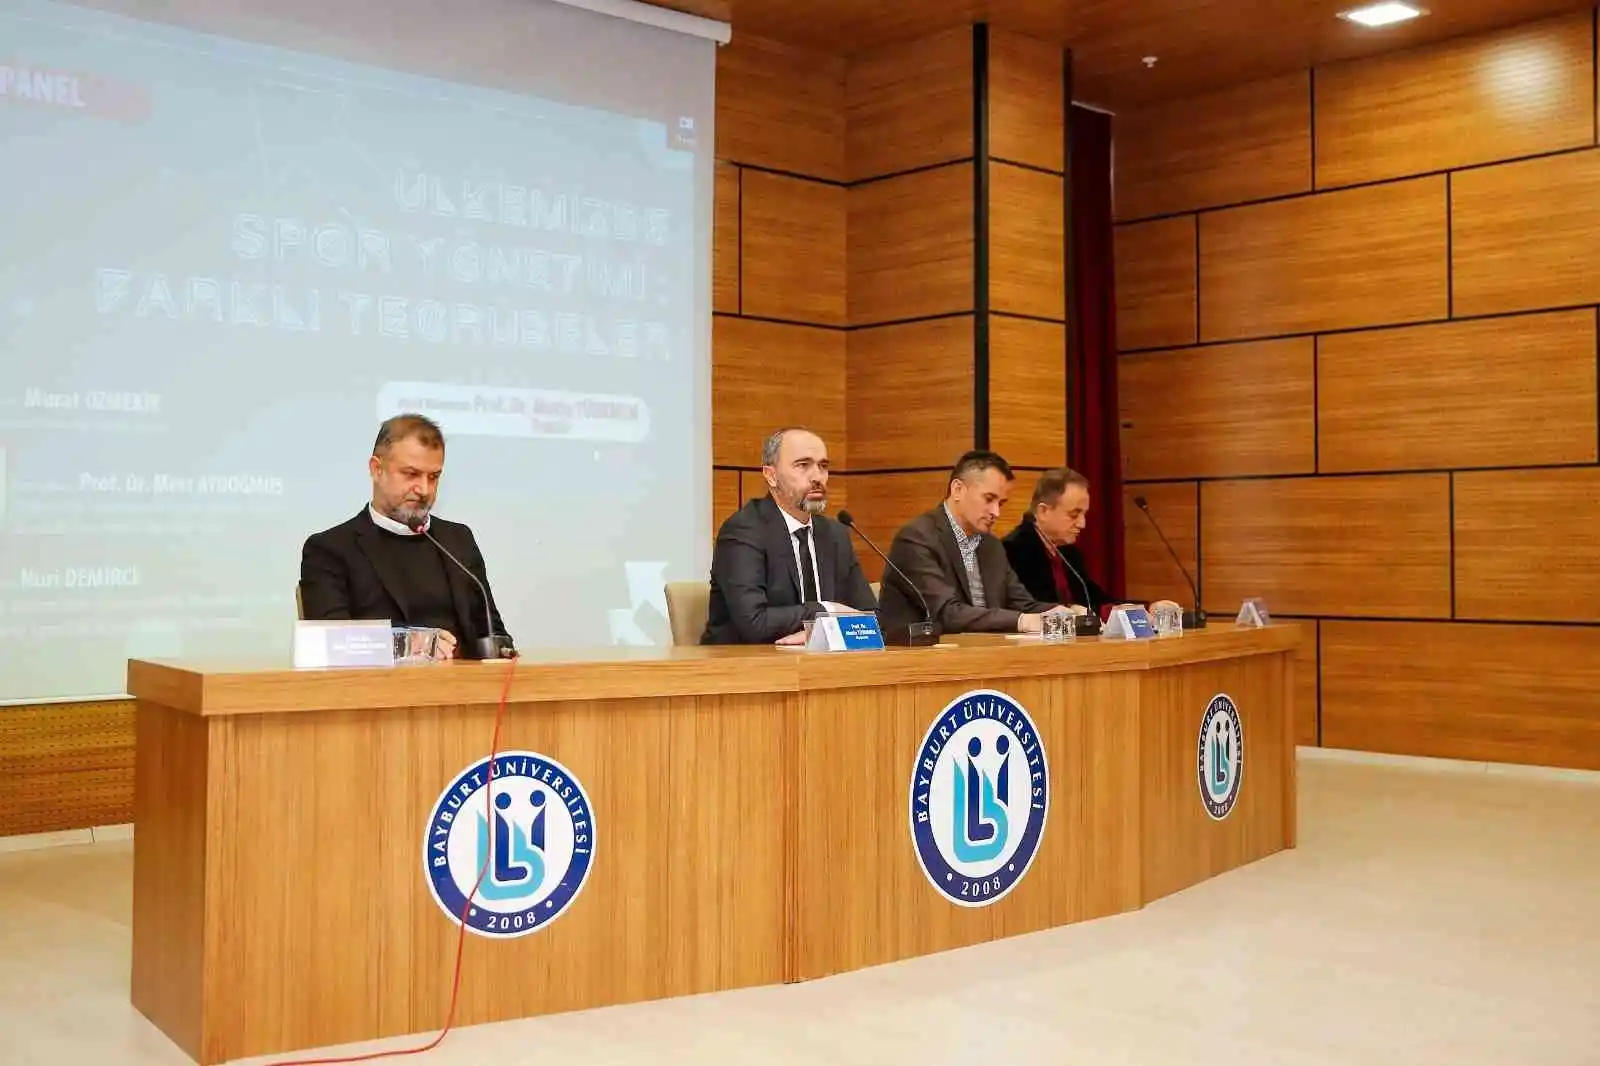 Bayburt'ta "Ülkemizde Spor Yönetimi: Farklı Tecrübeler" konulu panel düzenlendi
